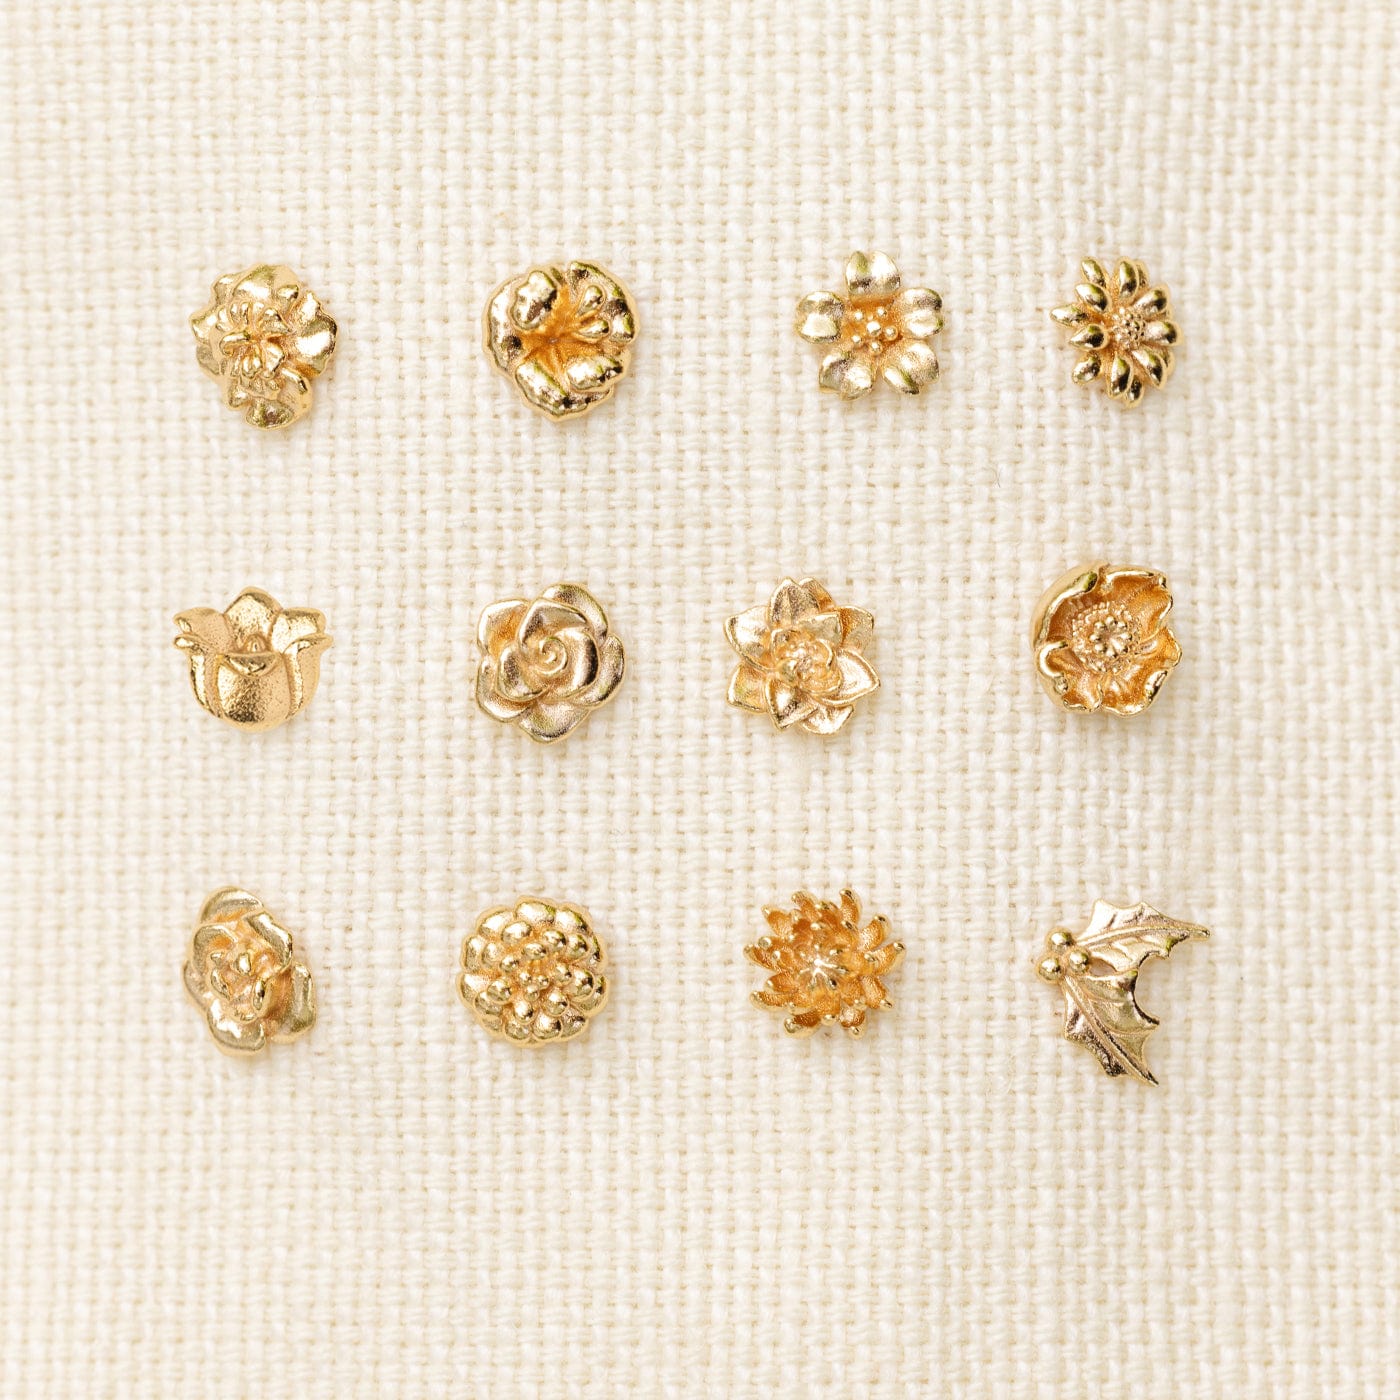 July Birth Flower Stud Earrings Gold Vermeil Earring